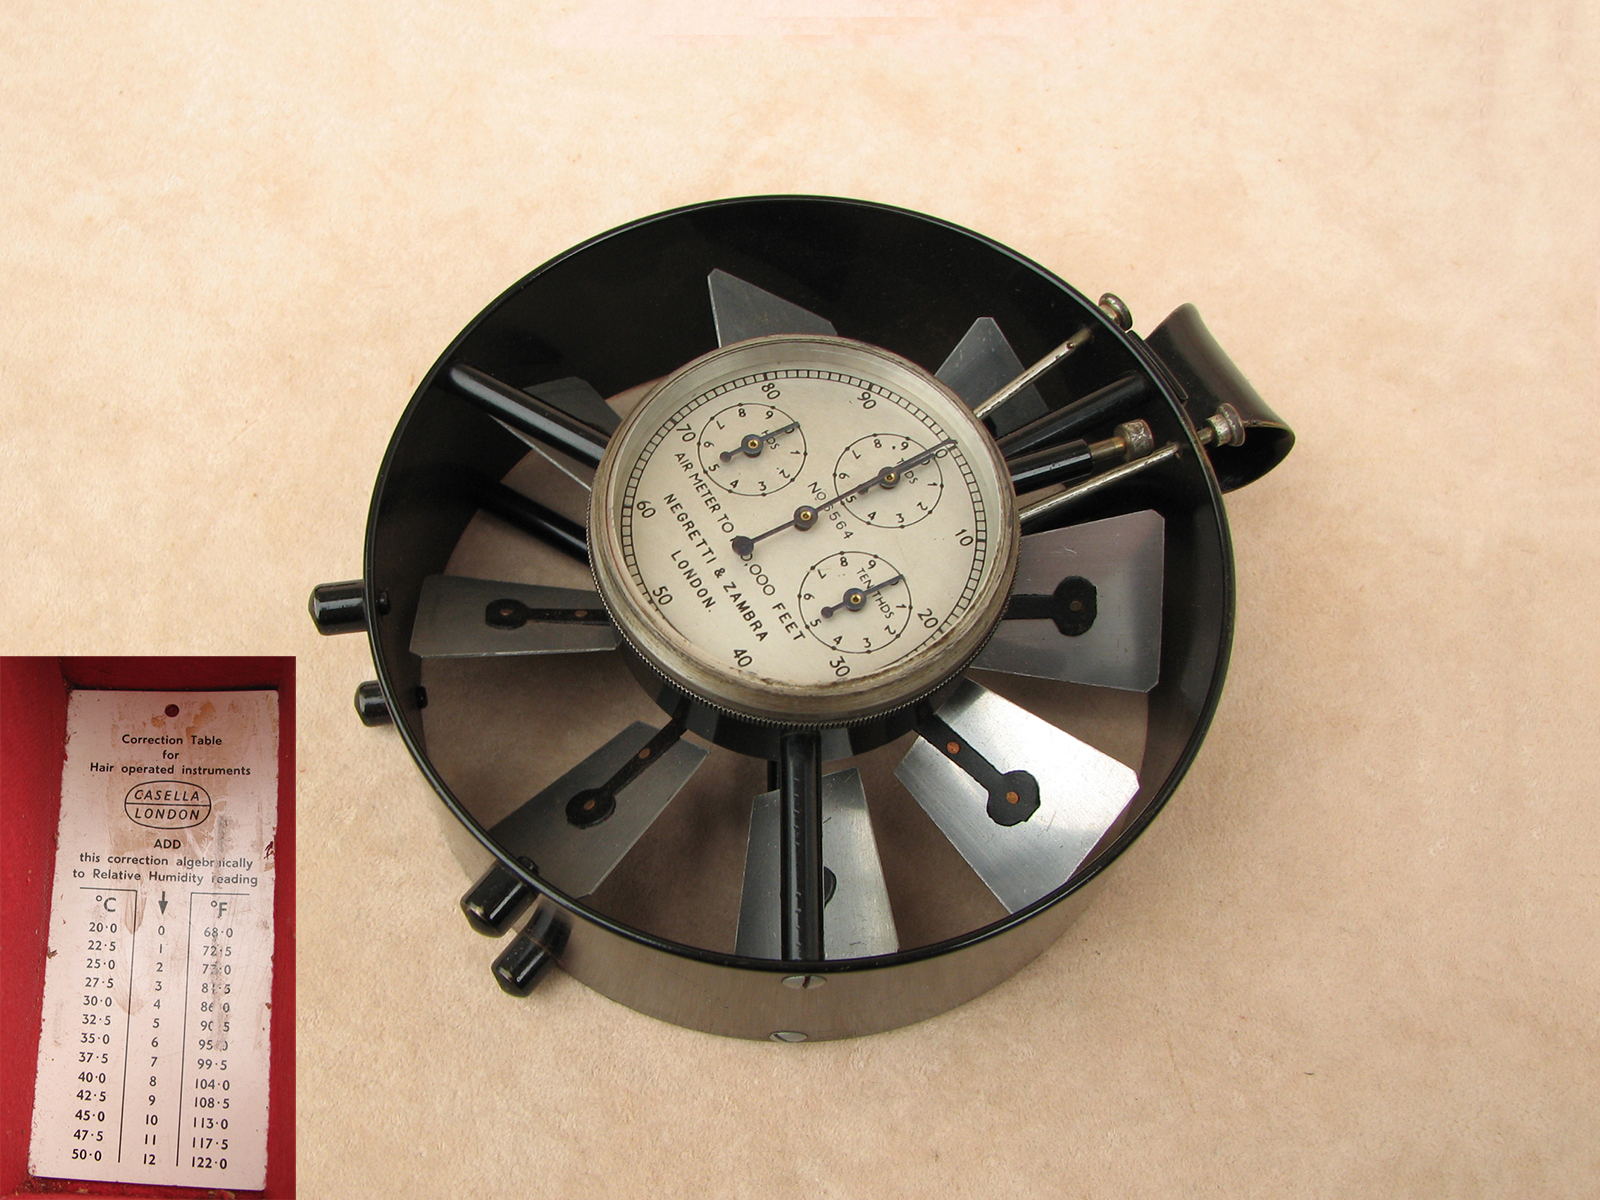 Biram type medium speed mining airmeter by Negretti & Zambra